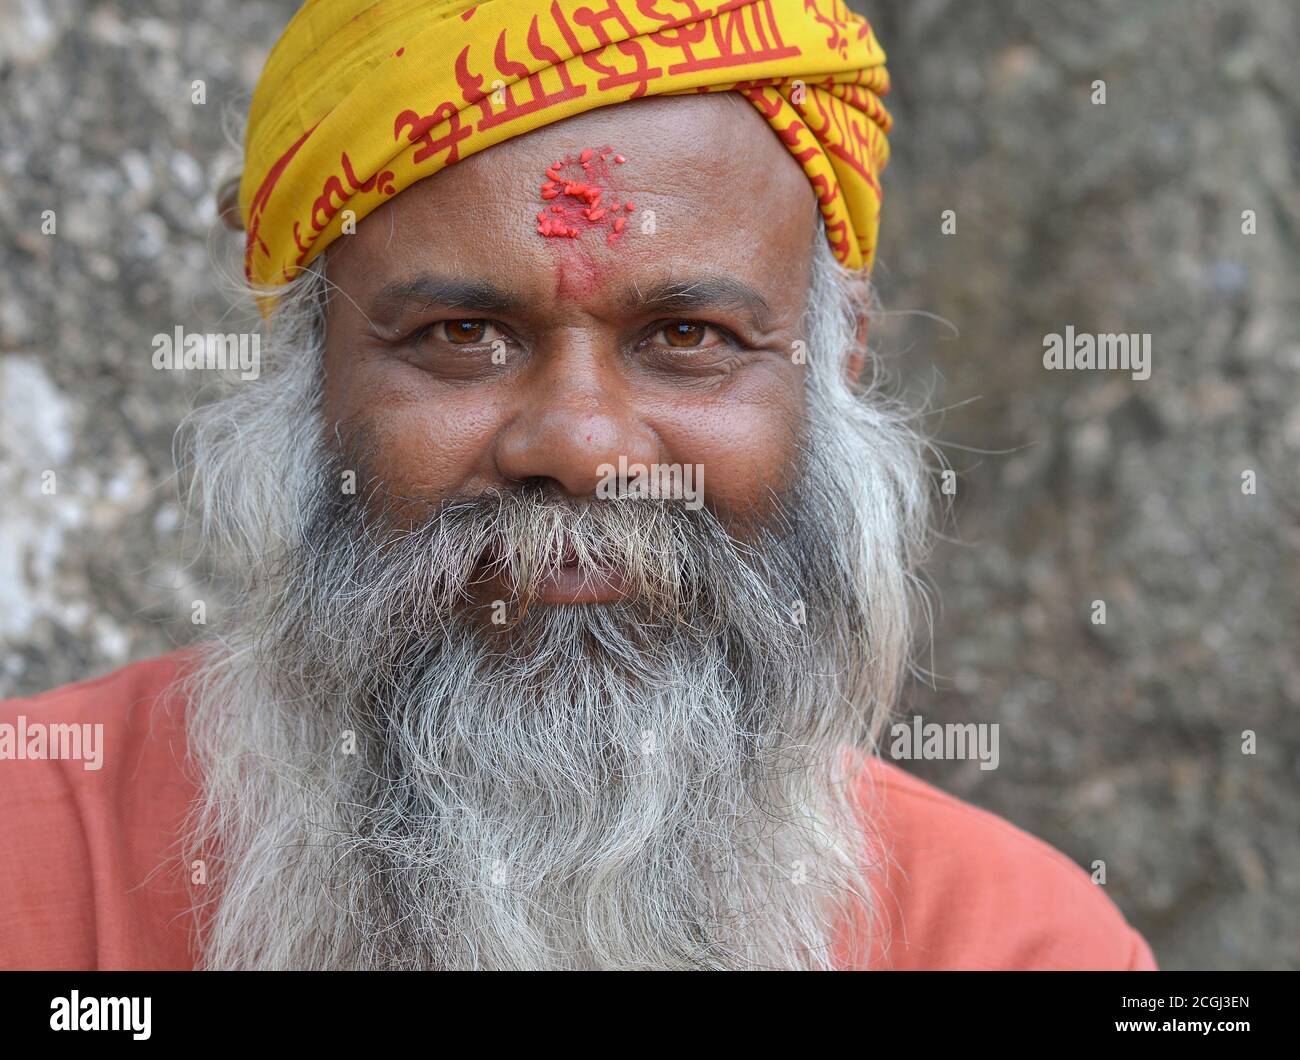 Der alte nepalesische Bettler und Hindu-Anhänger mit roter Reiskleie auf der Stirn lächelt für die Kamera. Stockfoto